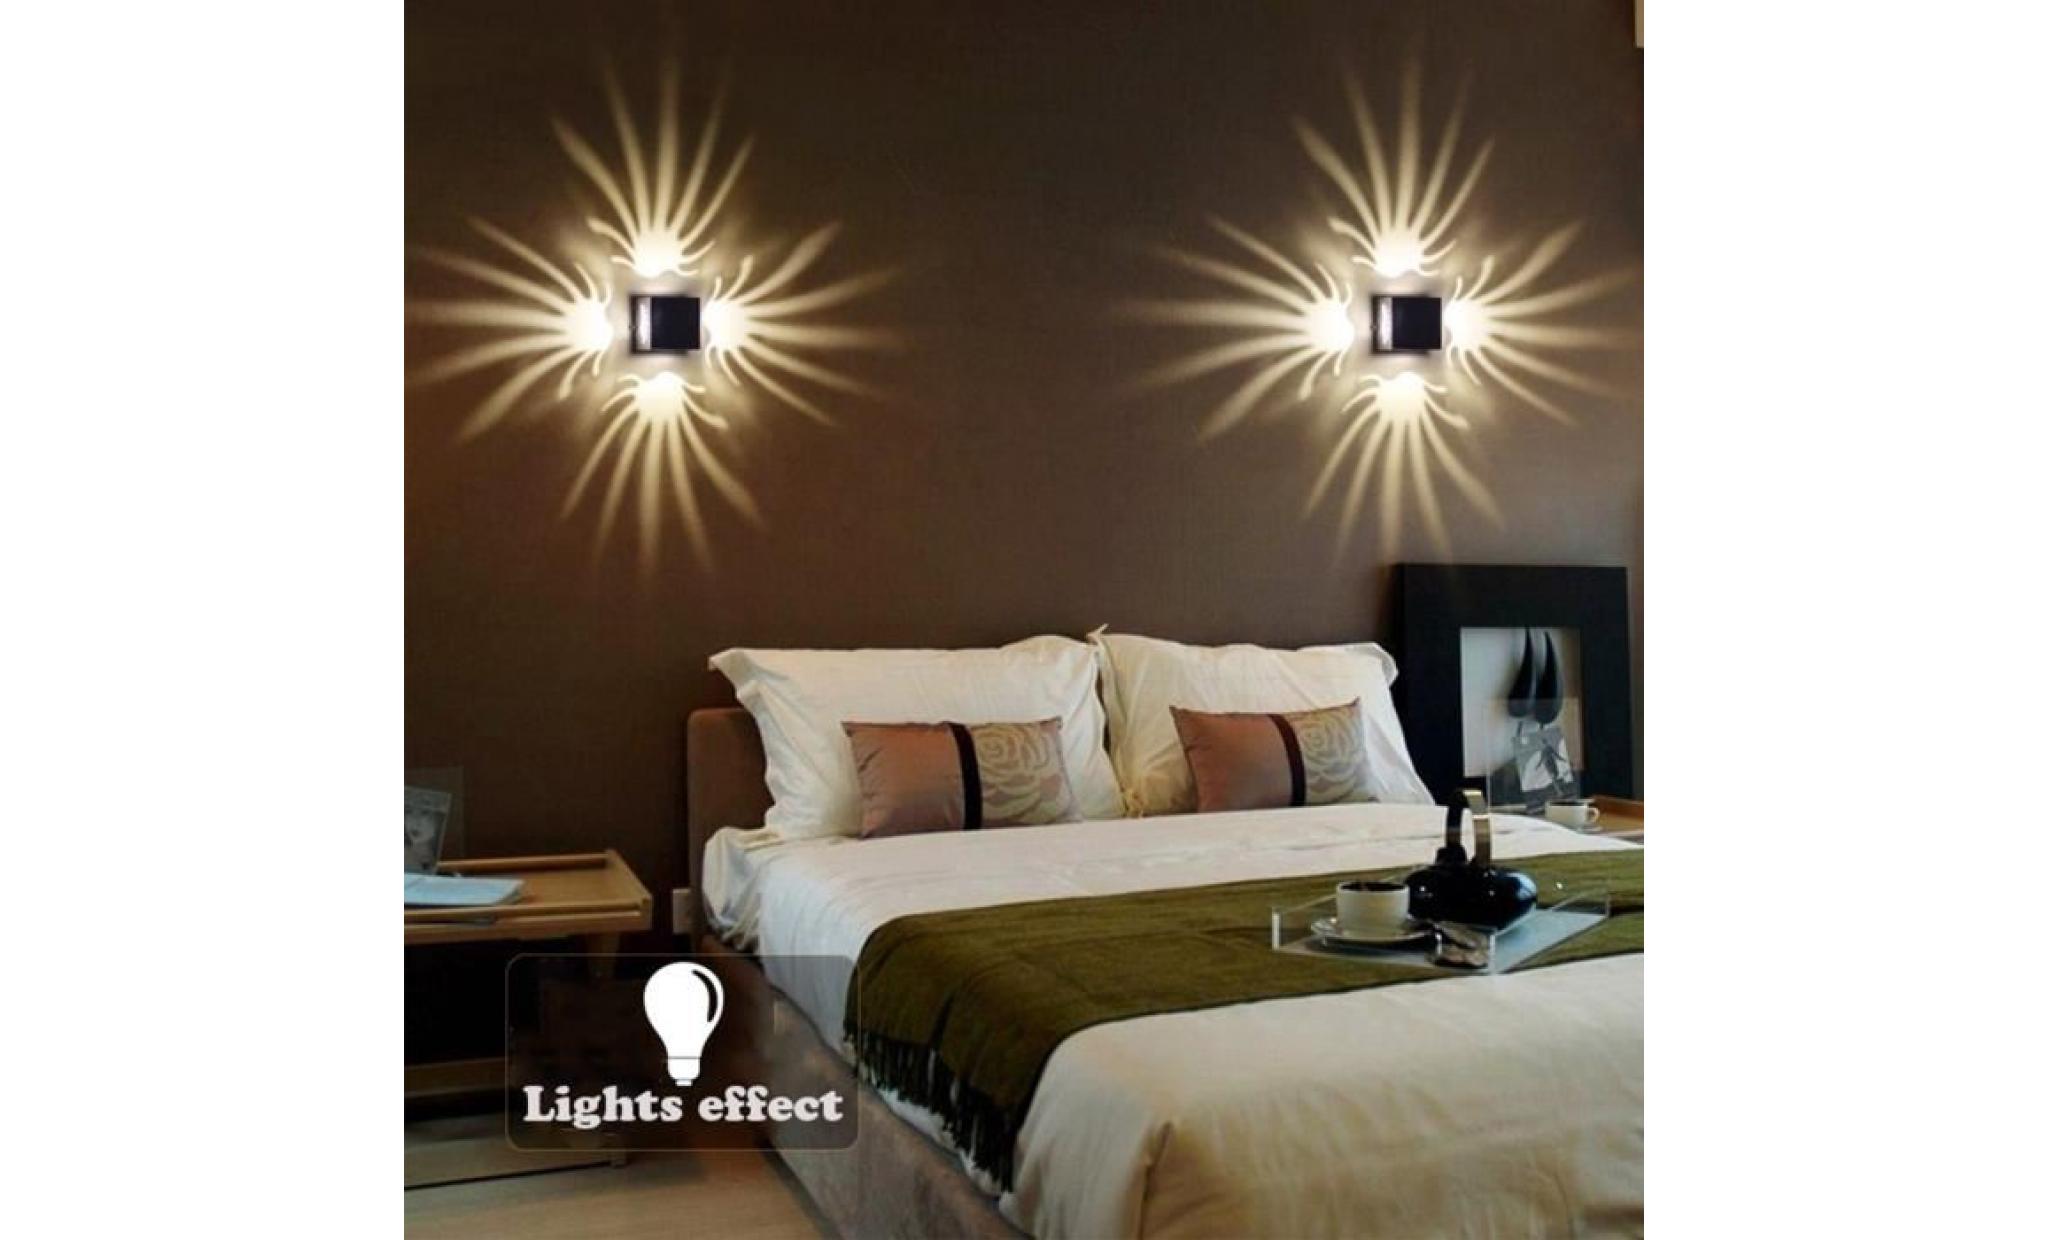 applique led 3w ac85 265v ac85 265v lampe créative moderne en aluminium à économie d'énergie pour éclairage intérieur (blanc chaud) pas cher